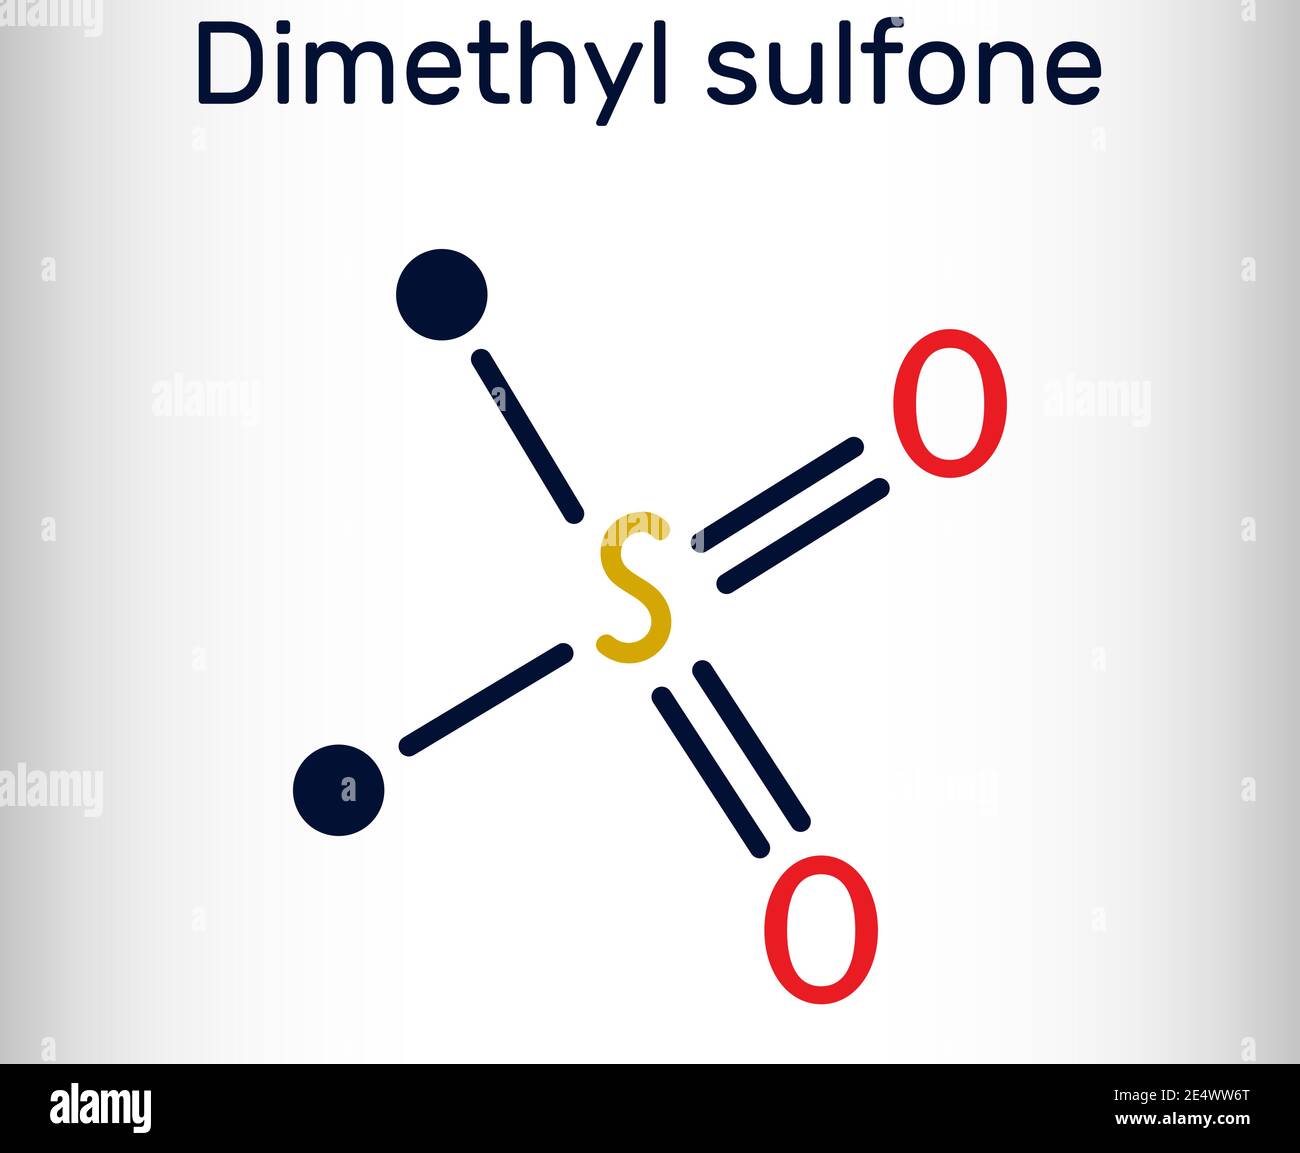 Méthylsulfonylméthane, MSM, méthylsulfone, molécule de diméthyl sulfone. Il s'agit d'un composé organosulfuré dont le groupe fonctionnel est sulfonyle. Produit chimique squelettique Illustration de Vecteur